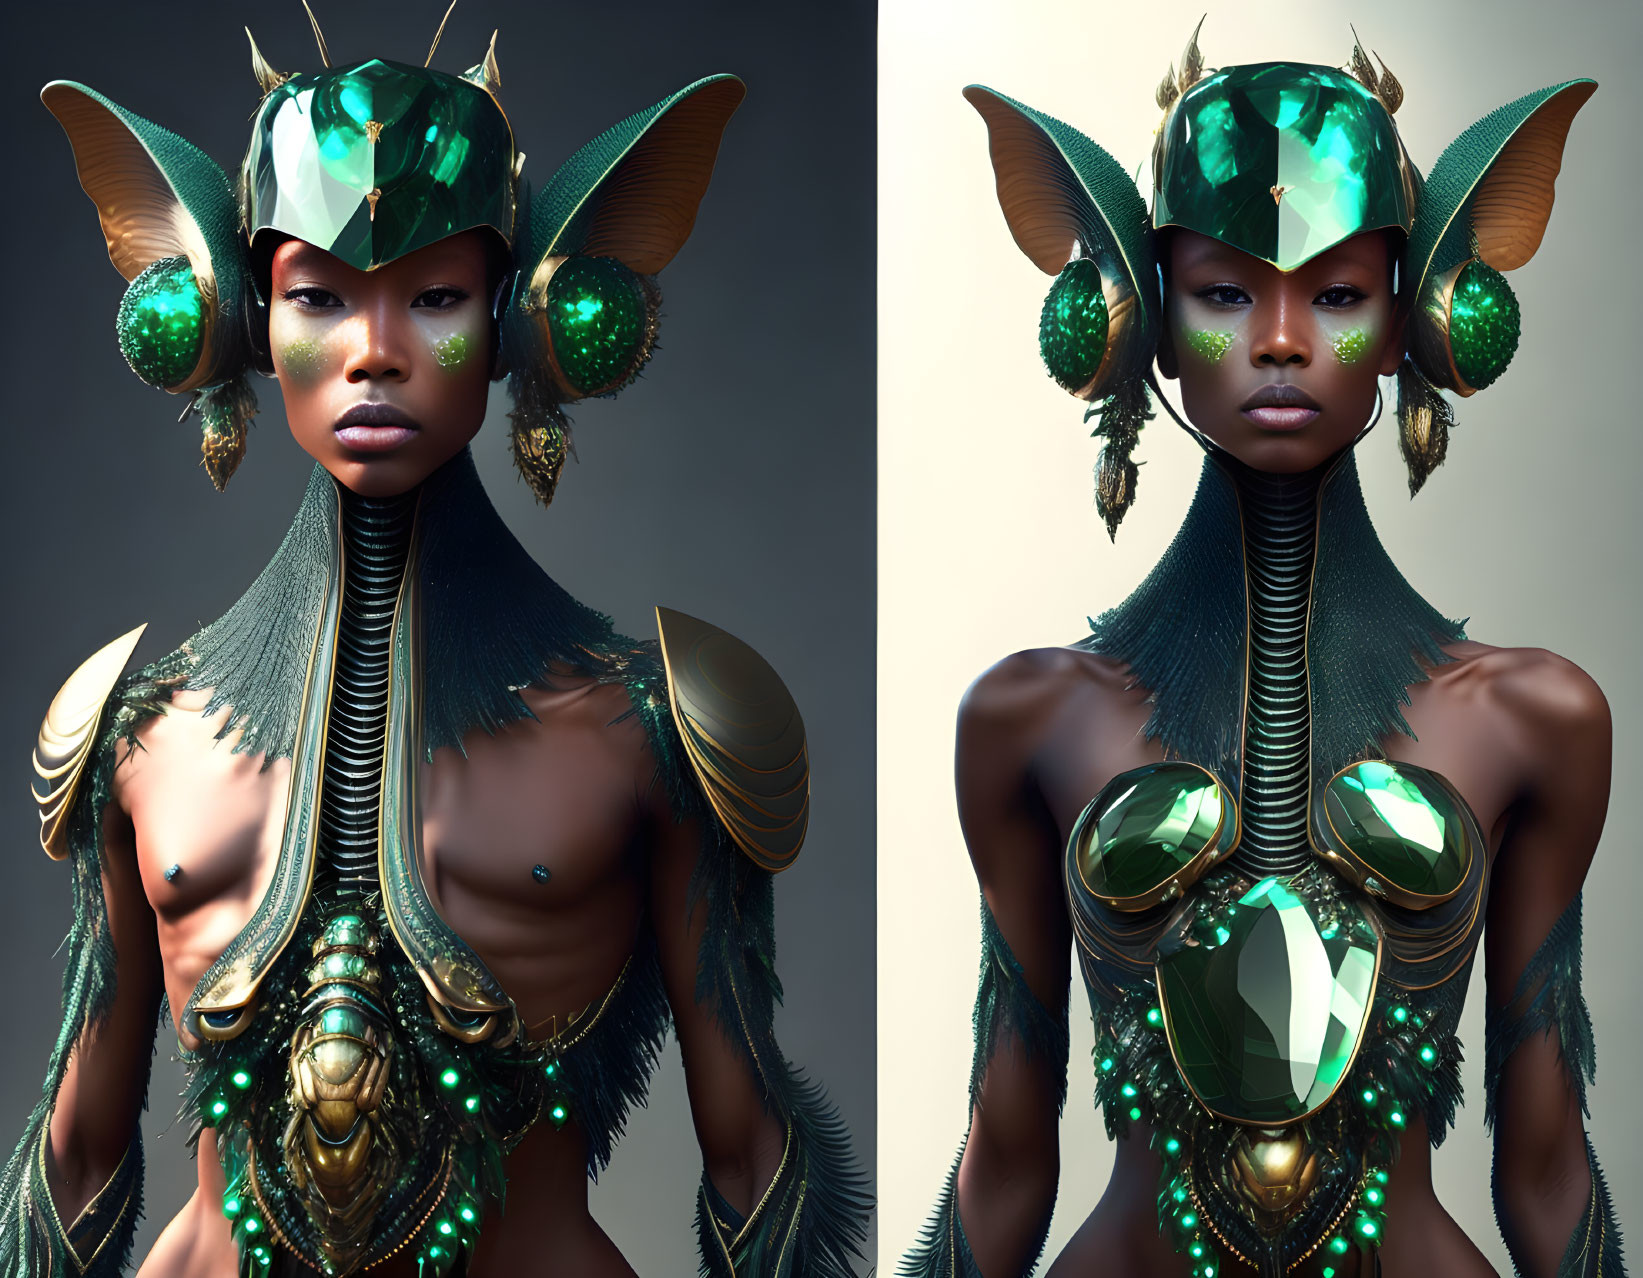 Digital artwork: Individual in gemstone armor & mystical headdress.